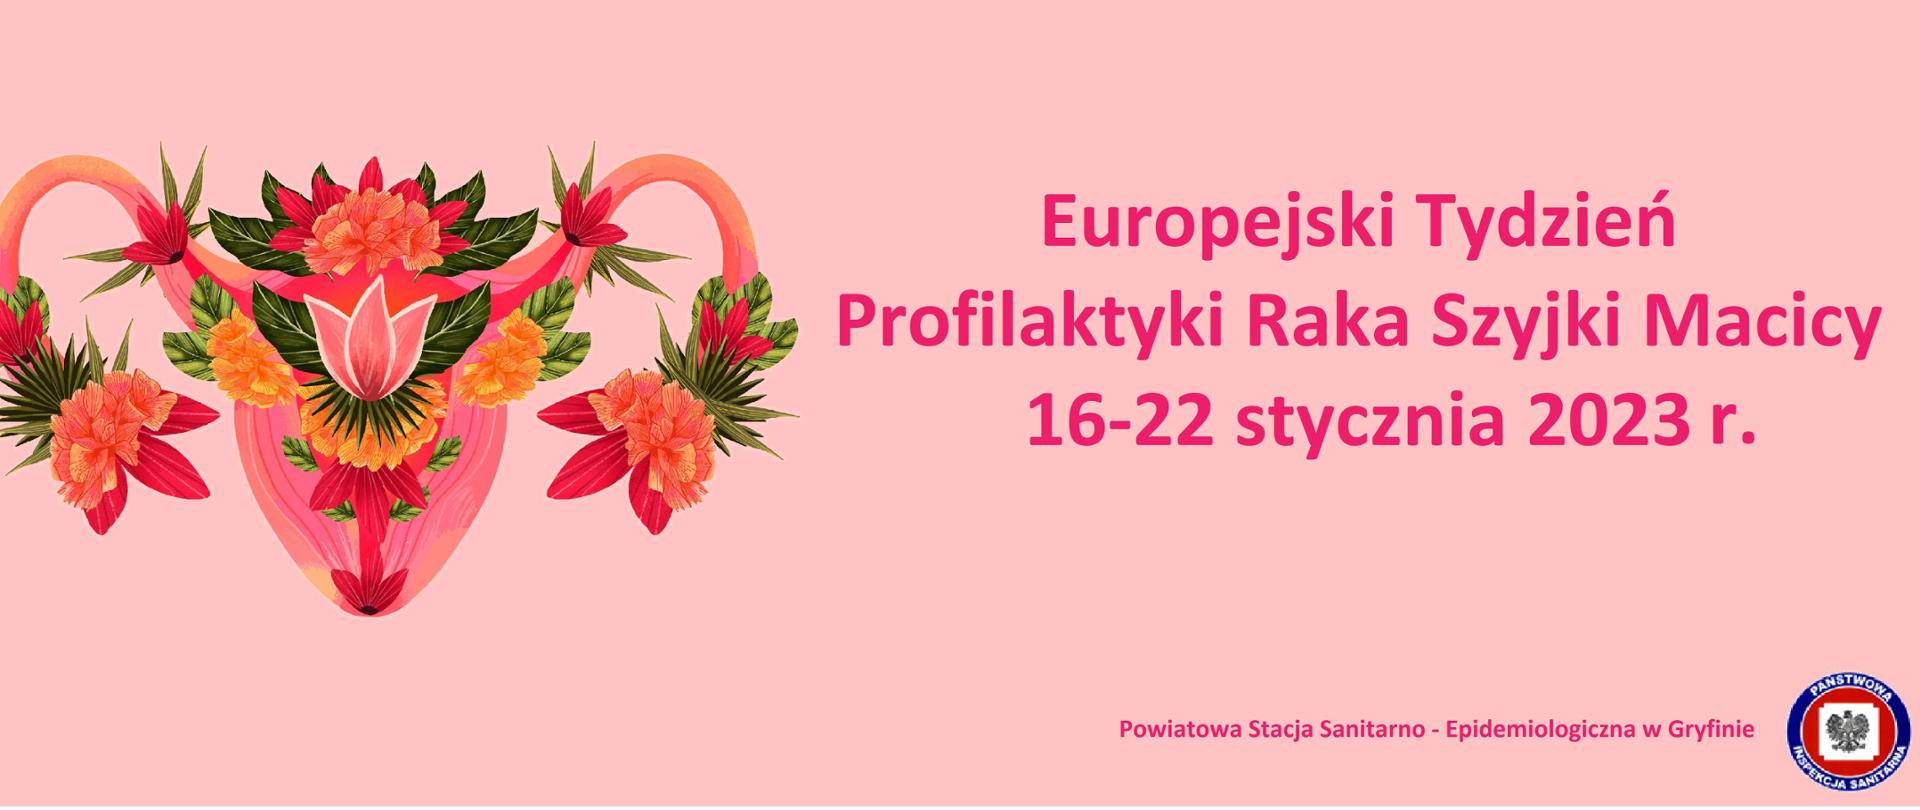 Różowe tło, po lewej stronie kwiaty ułożone w kształt macicy, po prawej stronie napis Europejski Tydzień Profilaktyki Raka Szyjki Macicy 2023